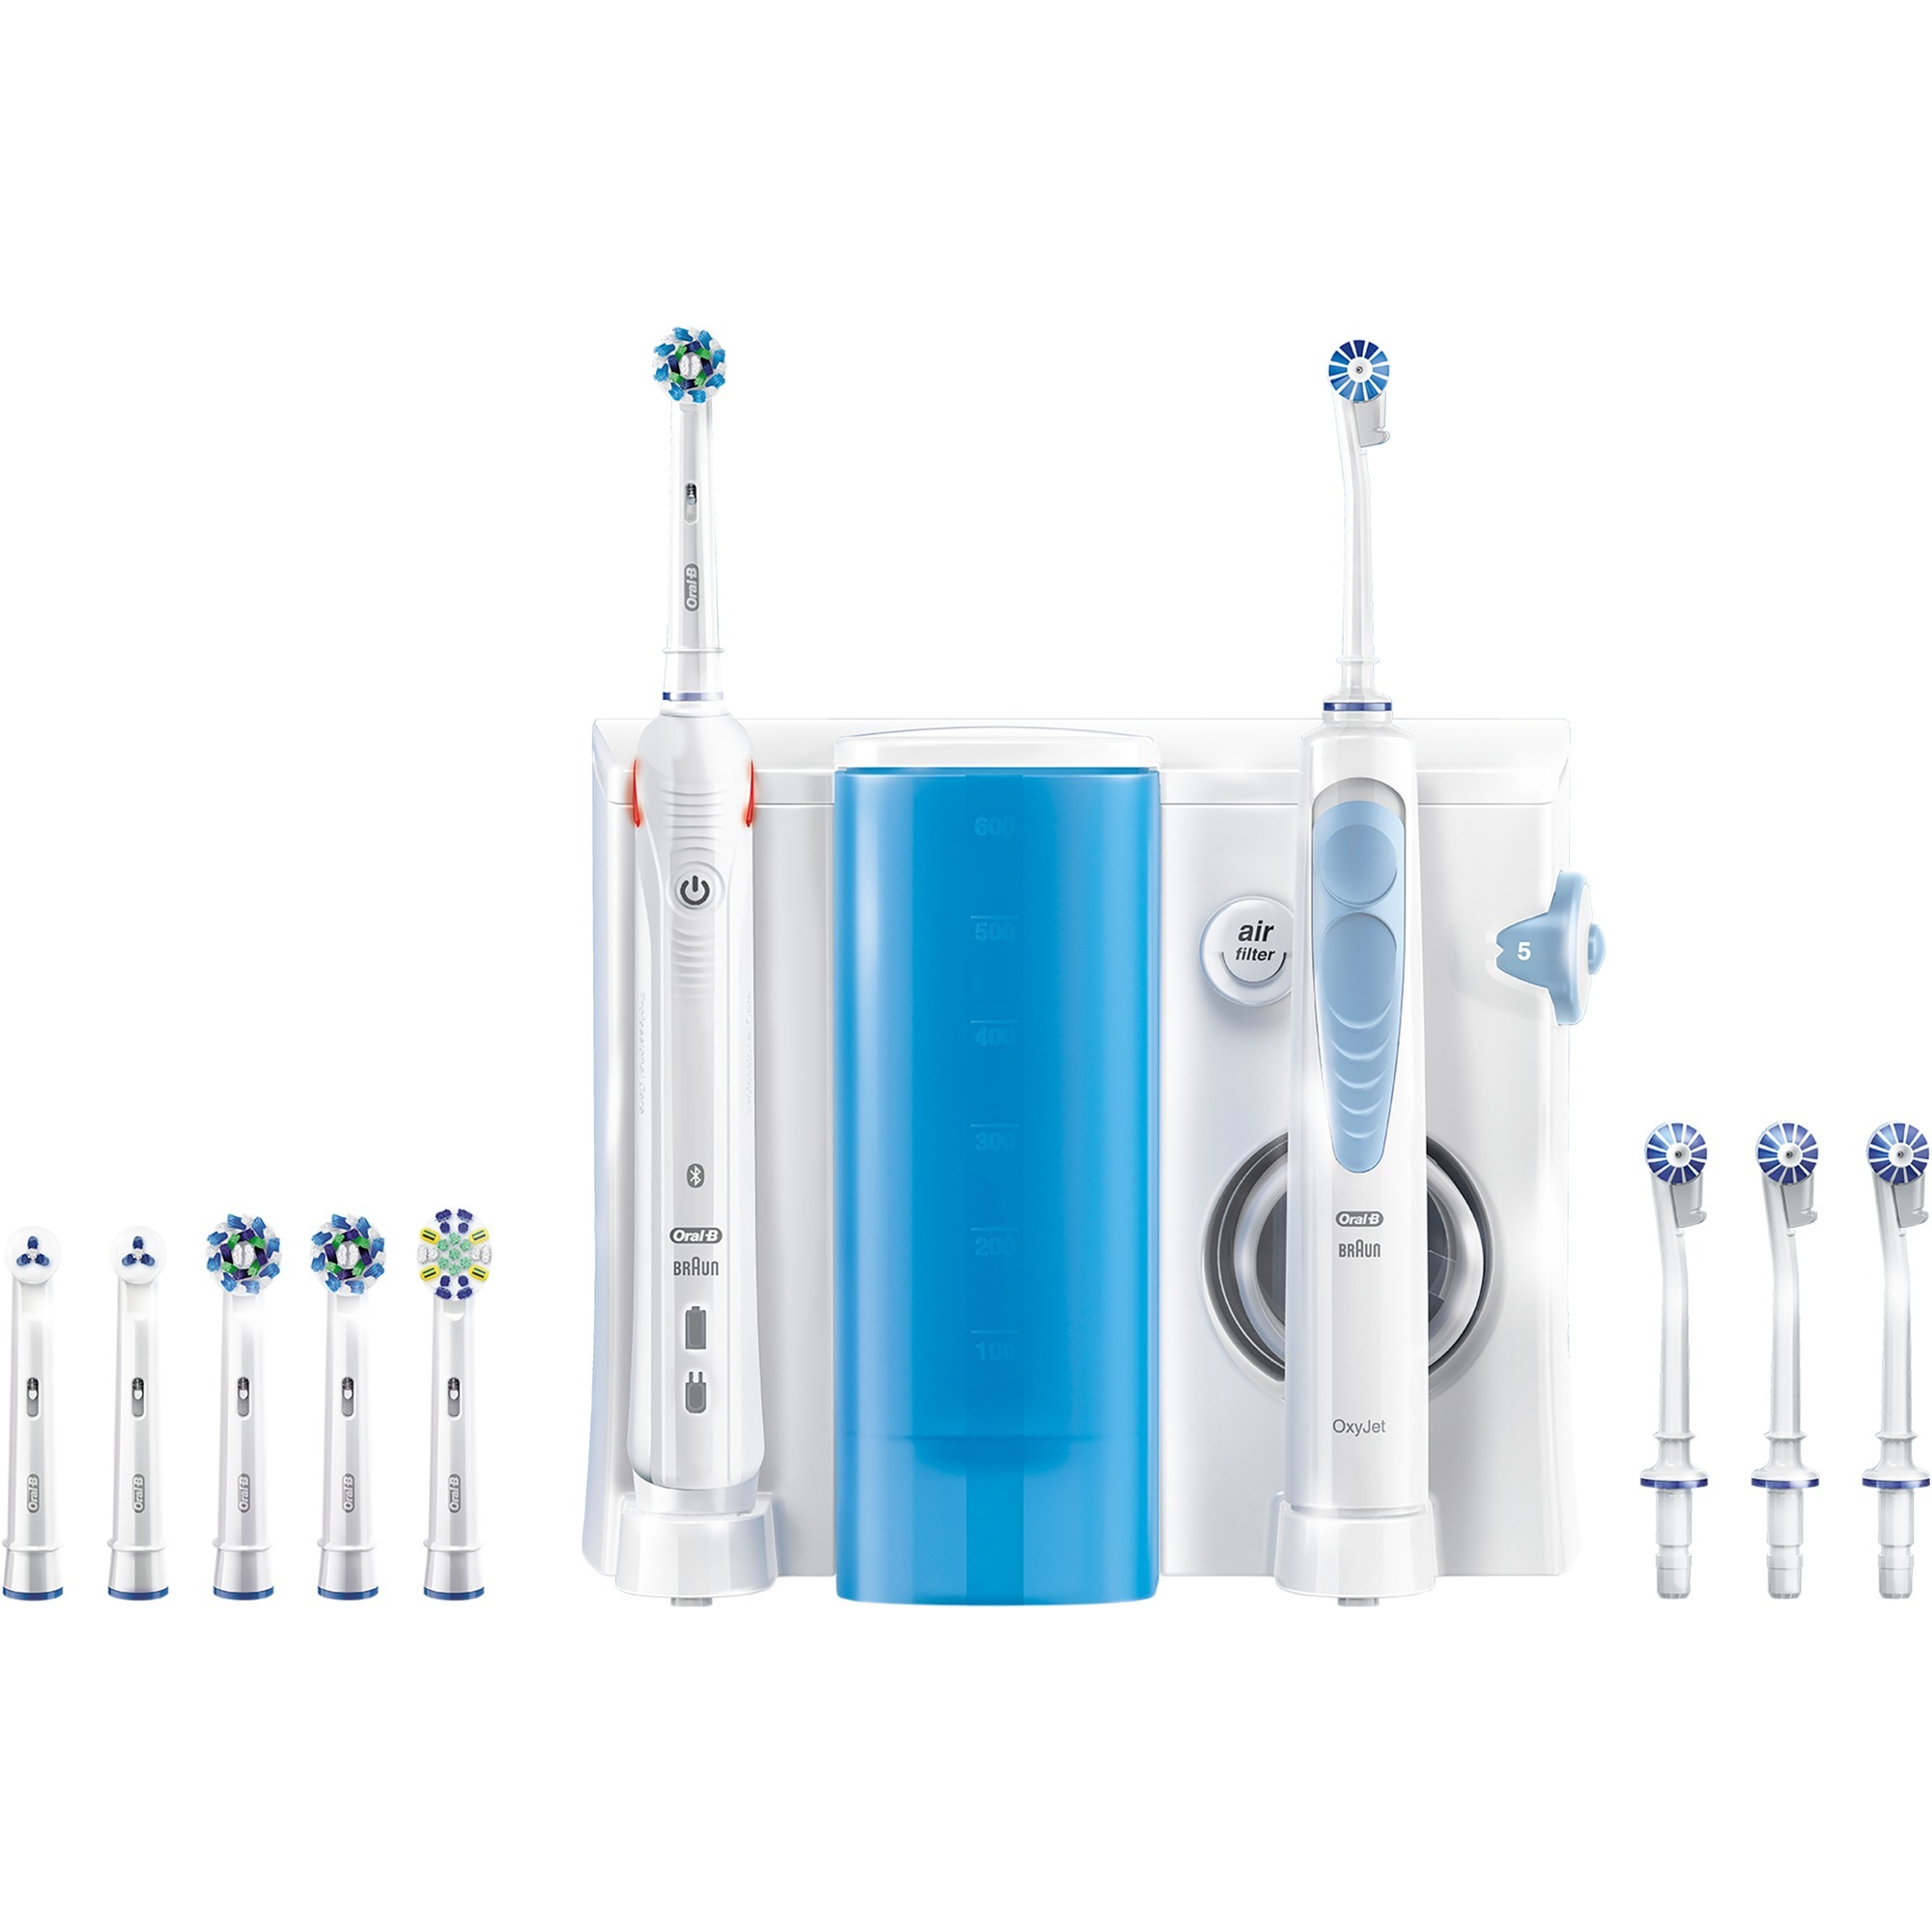 Image of Alternate - Oral-B Mundpflege-Center OxyJet + Smart 5000 online einkaufen bei Alternate